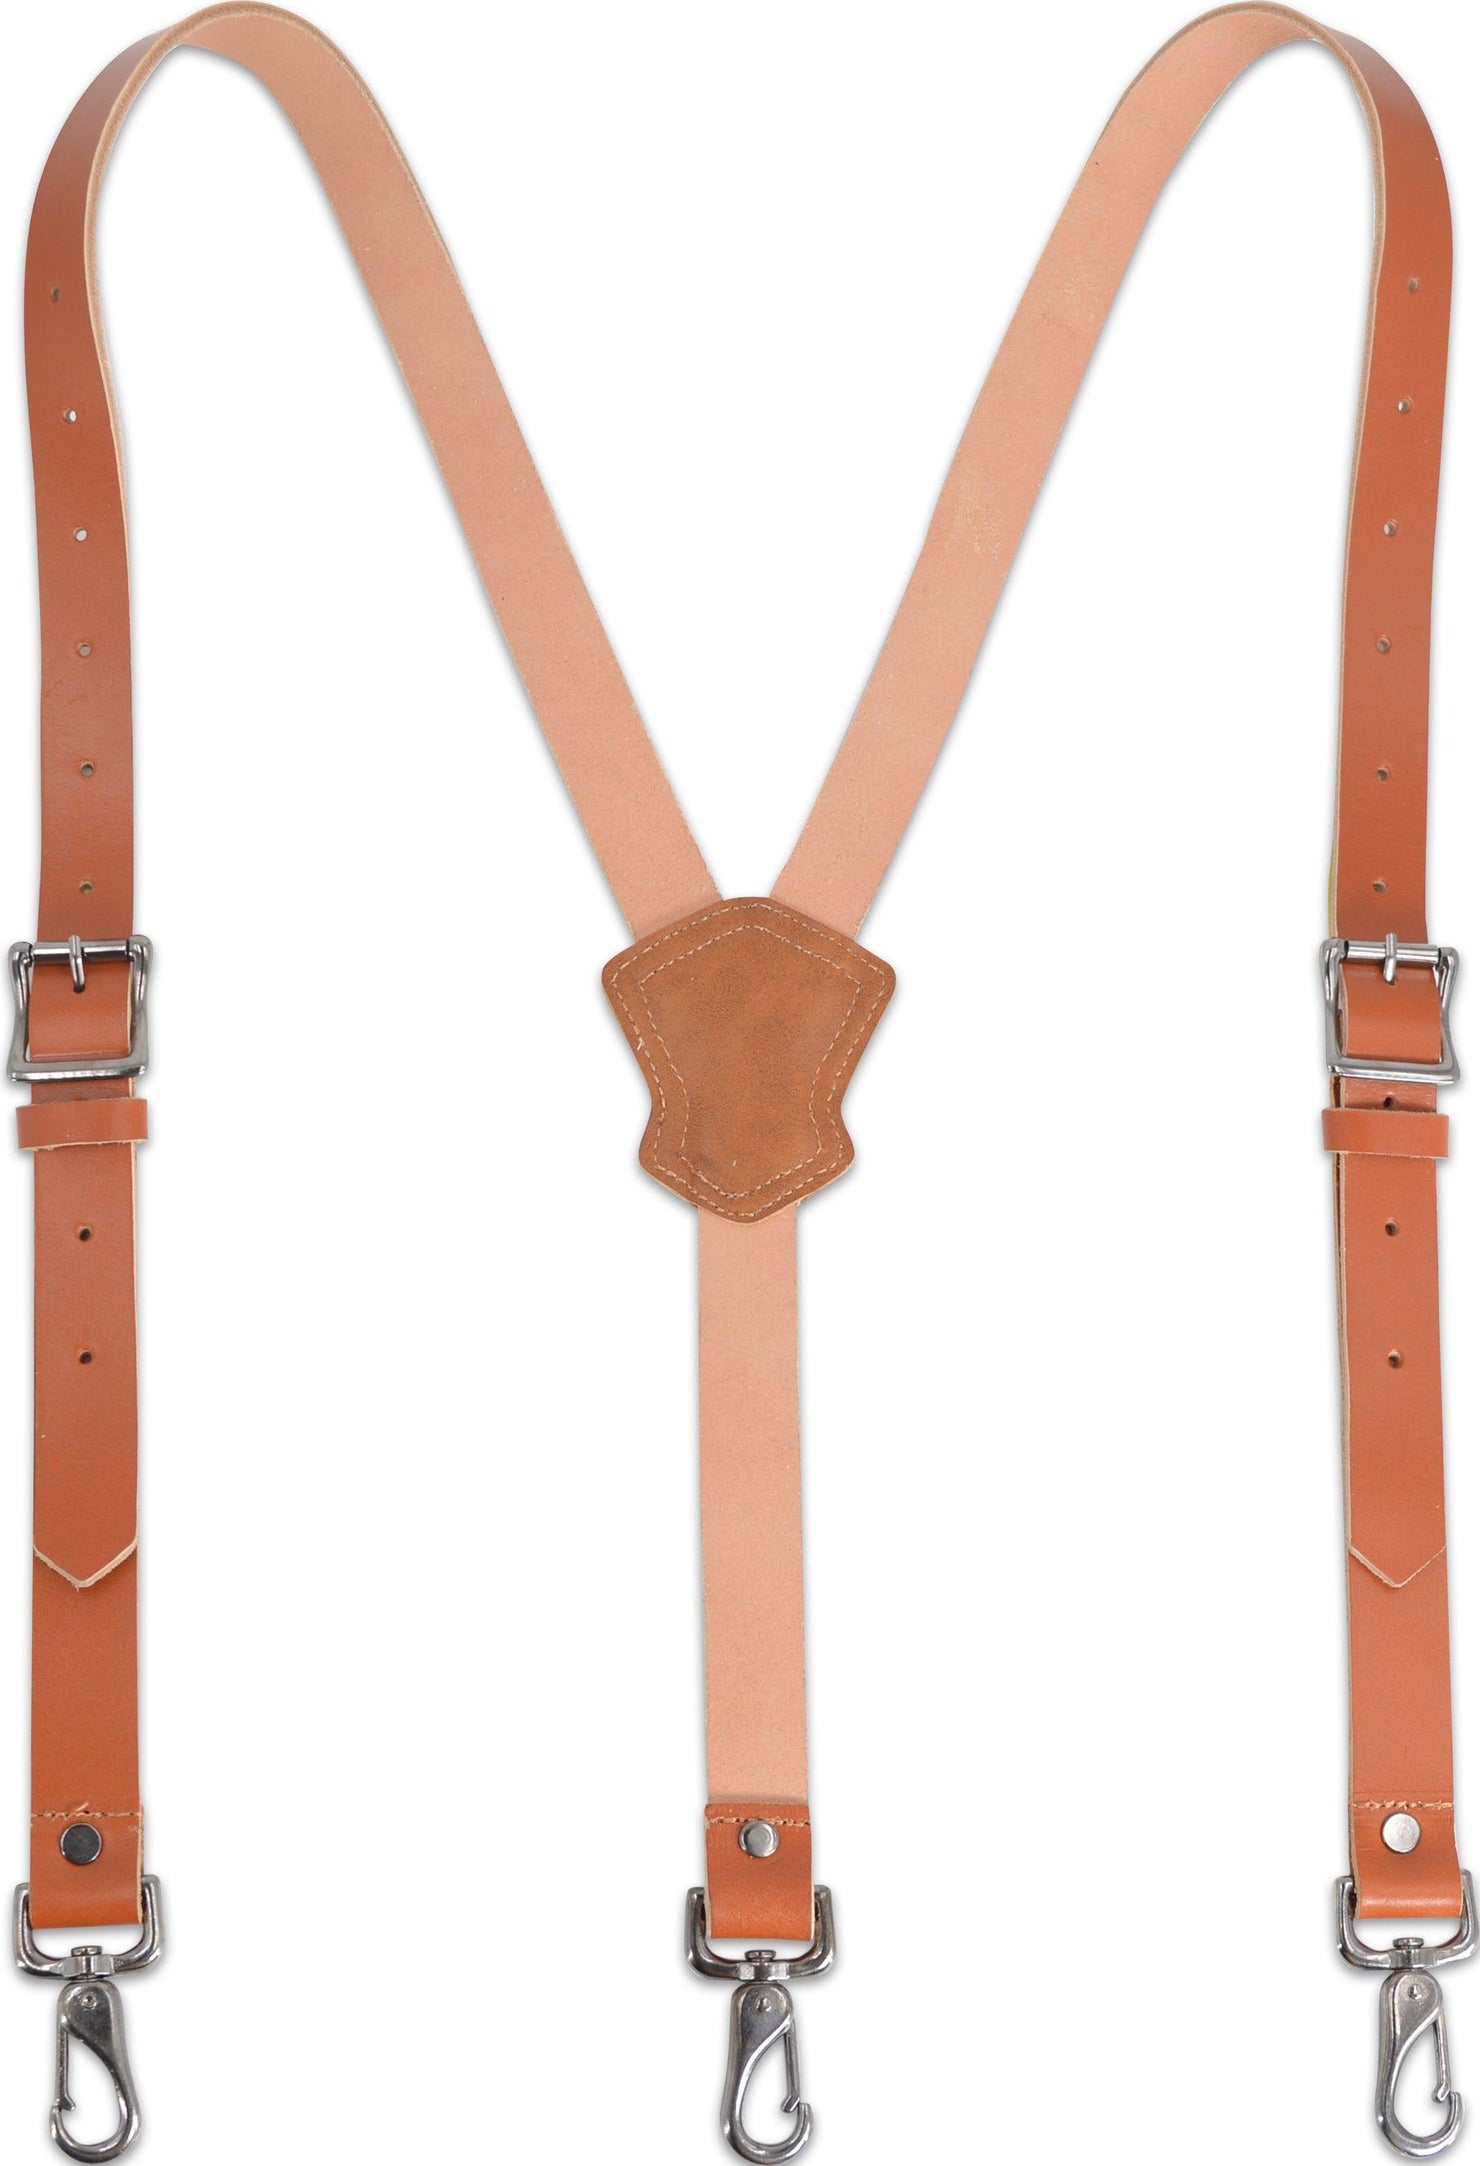 Leather Suspenders for Men - Welkinland